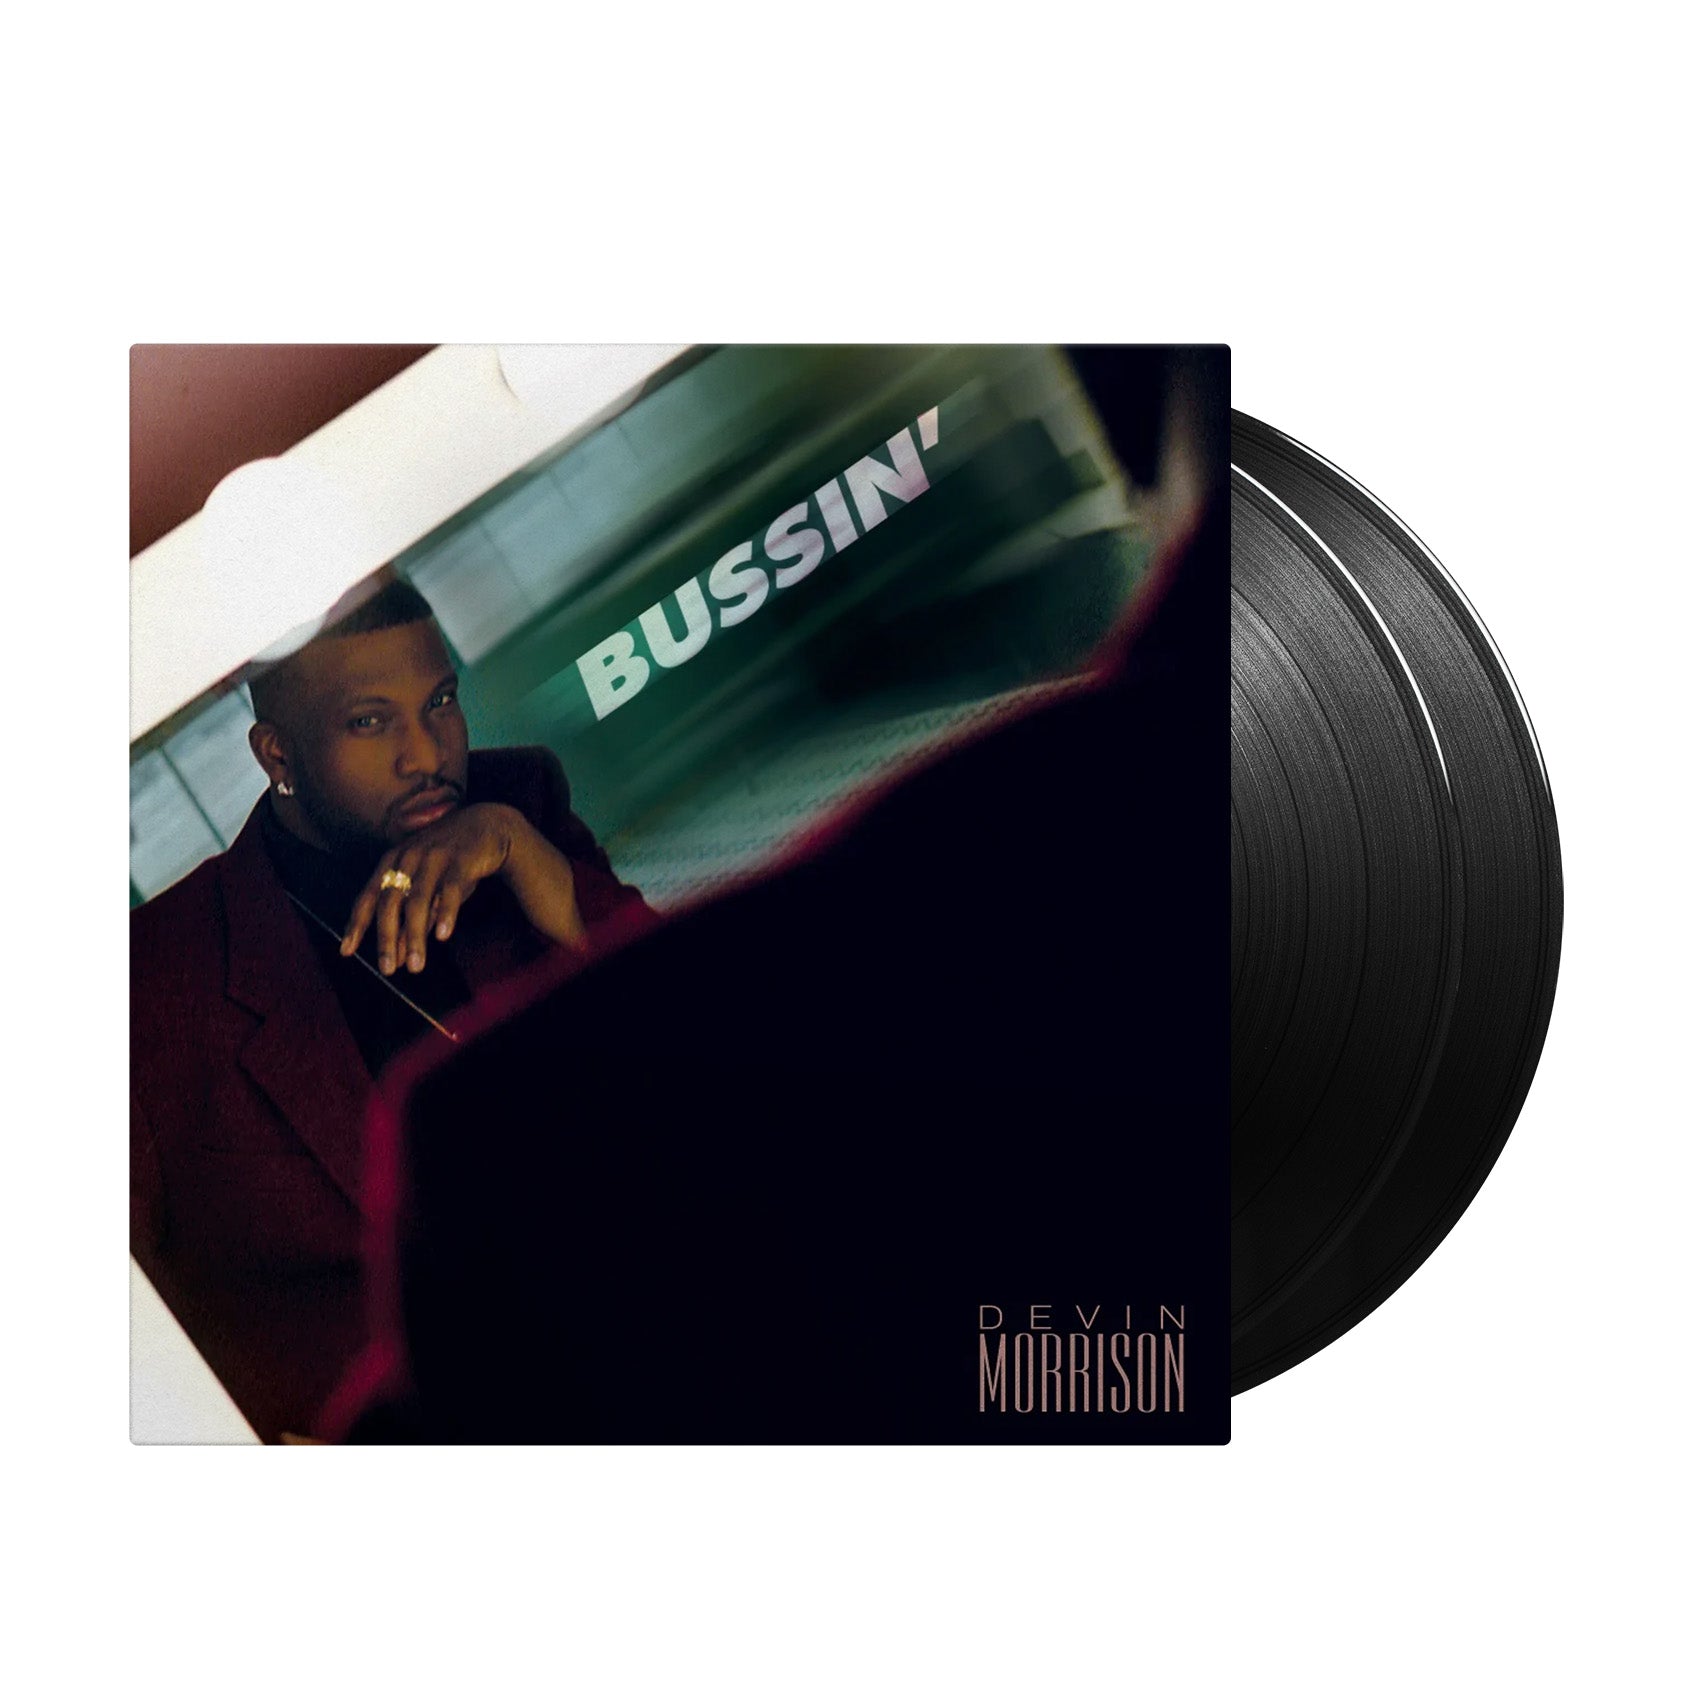 Devin Morrison - Bussin' – Inner Ocean Records